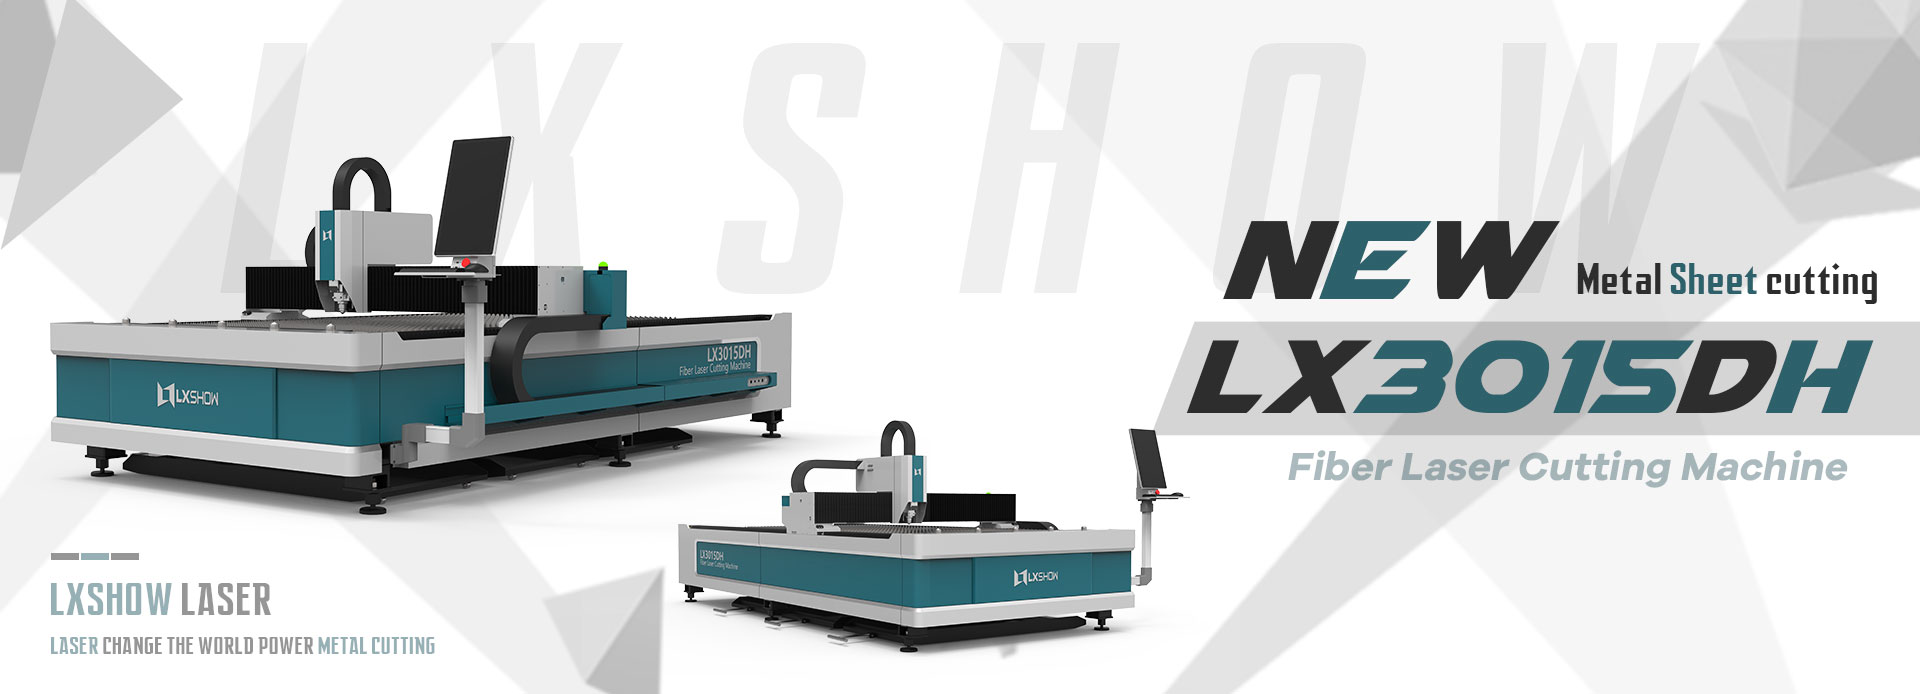 LX3015DH Metal Fiber Laser Cutting Sheet Machine Stainless Steel Carbon Steel 2kw 4kw 6kw 8kw 12kw